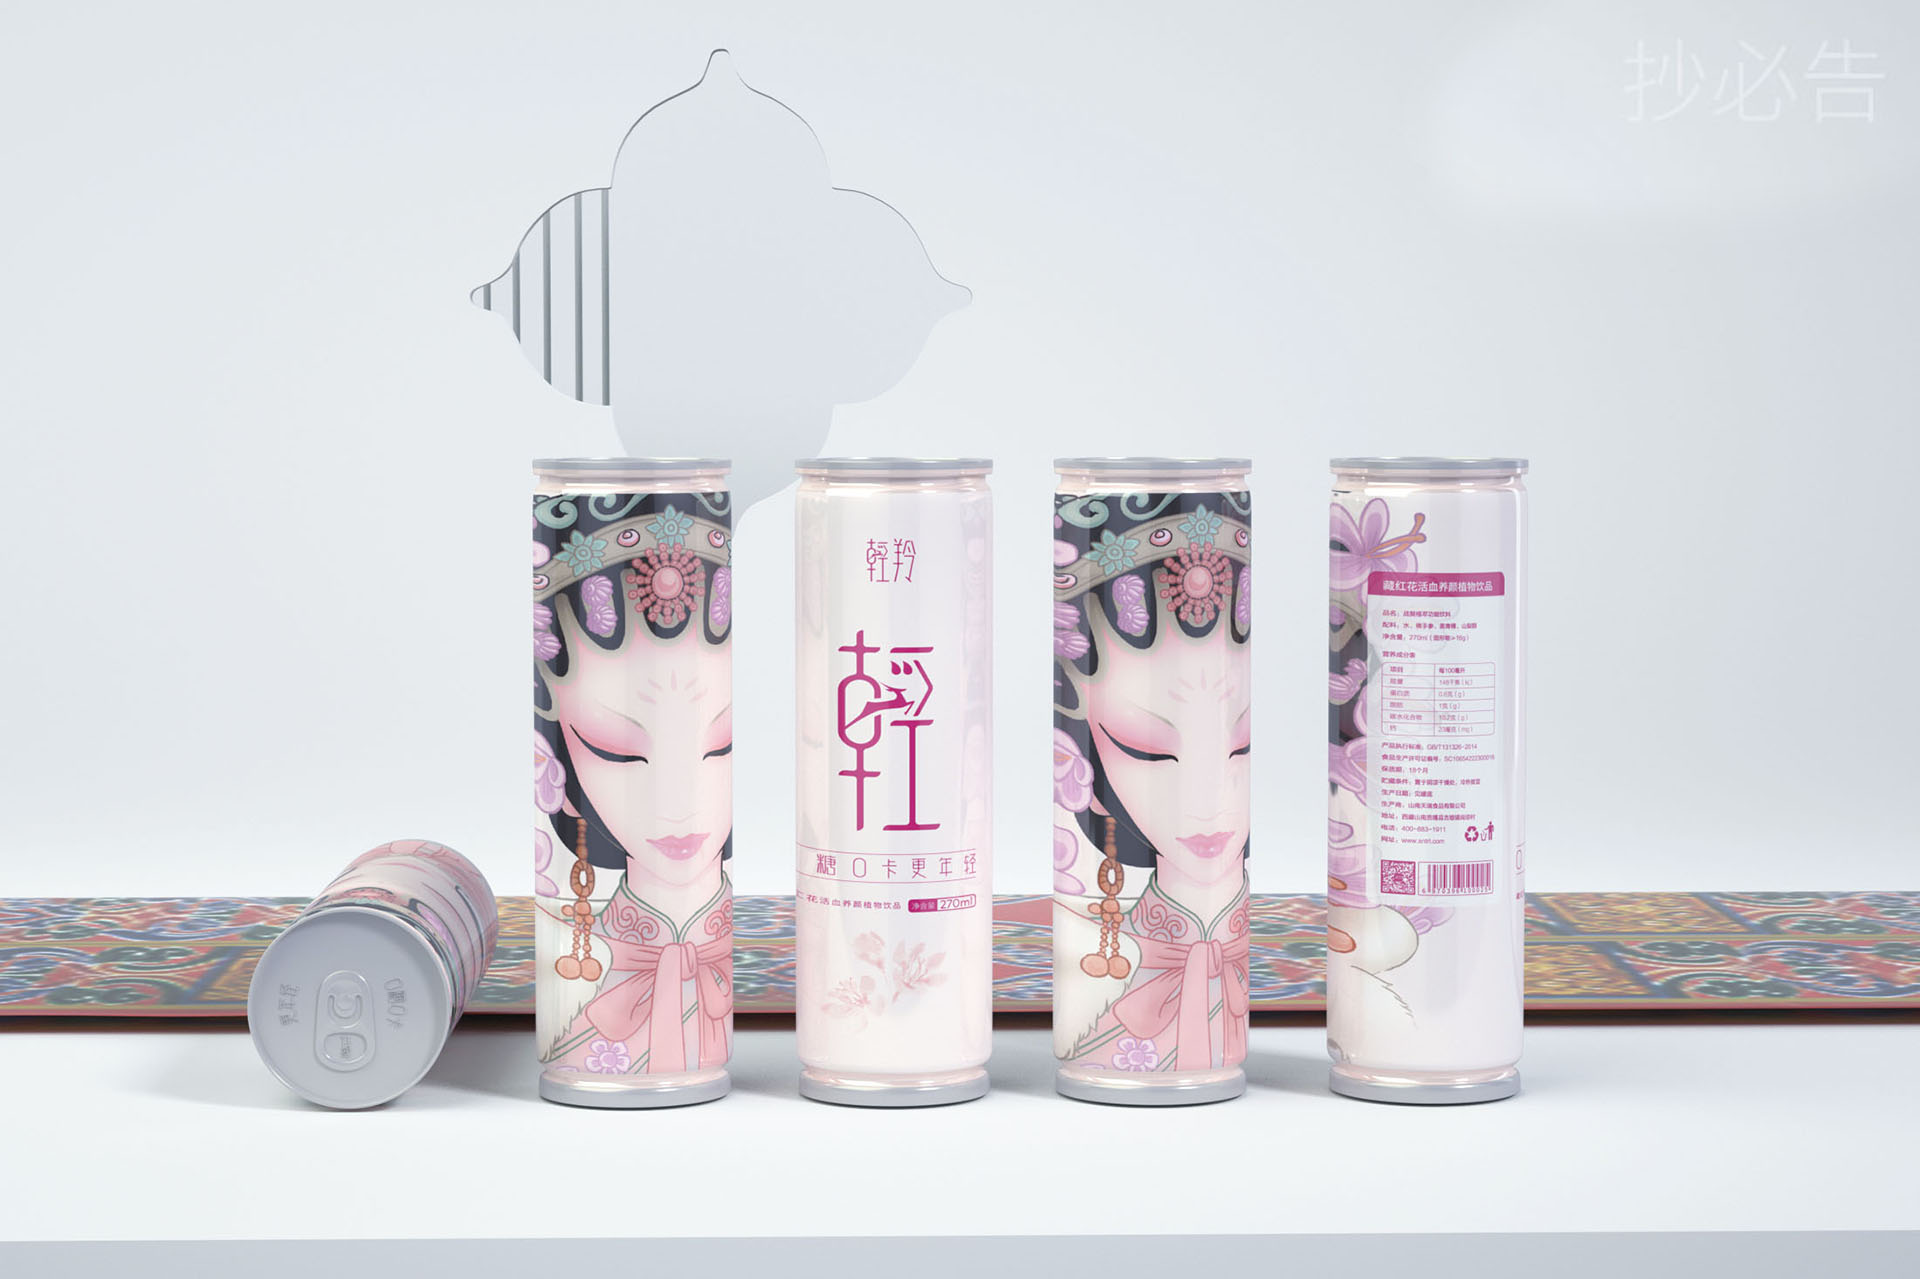 西藏女款功能饮料包装设计作品案例欣赏-新品上市/爆品打造